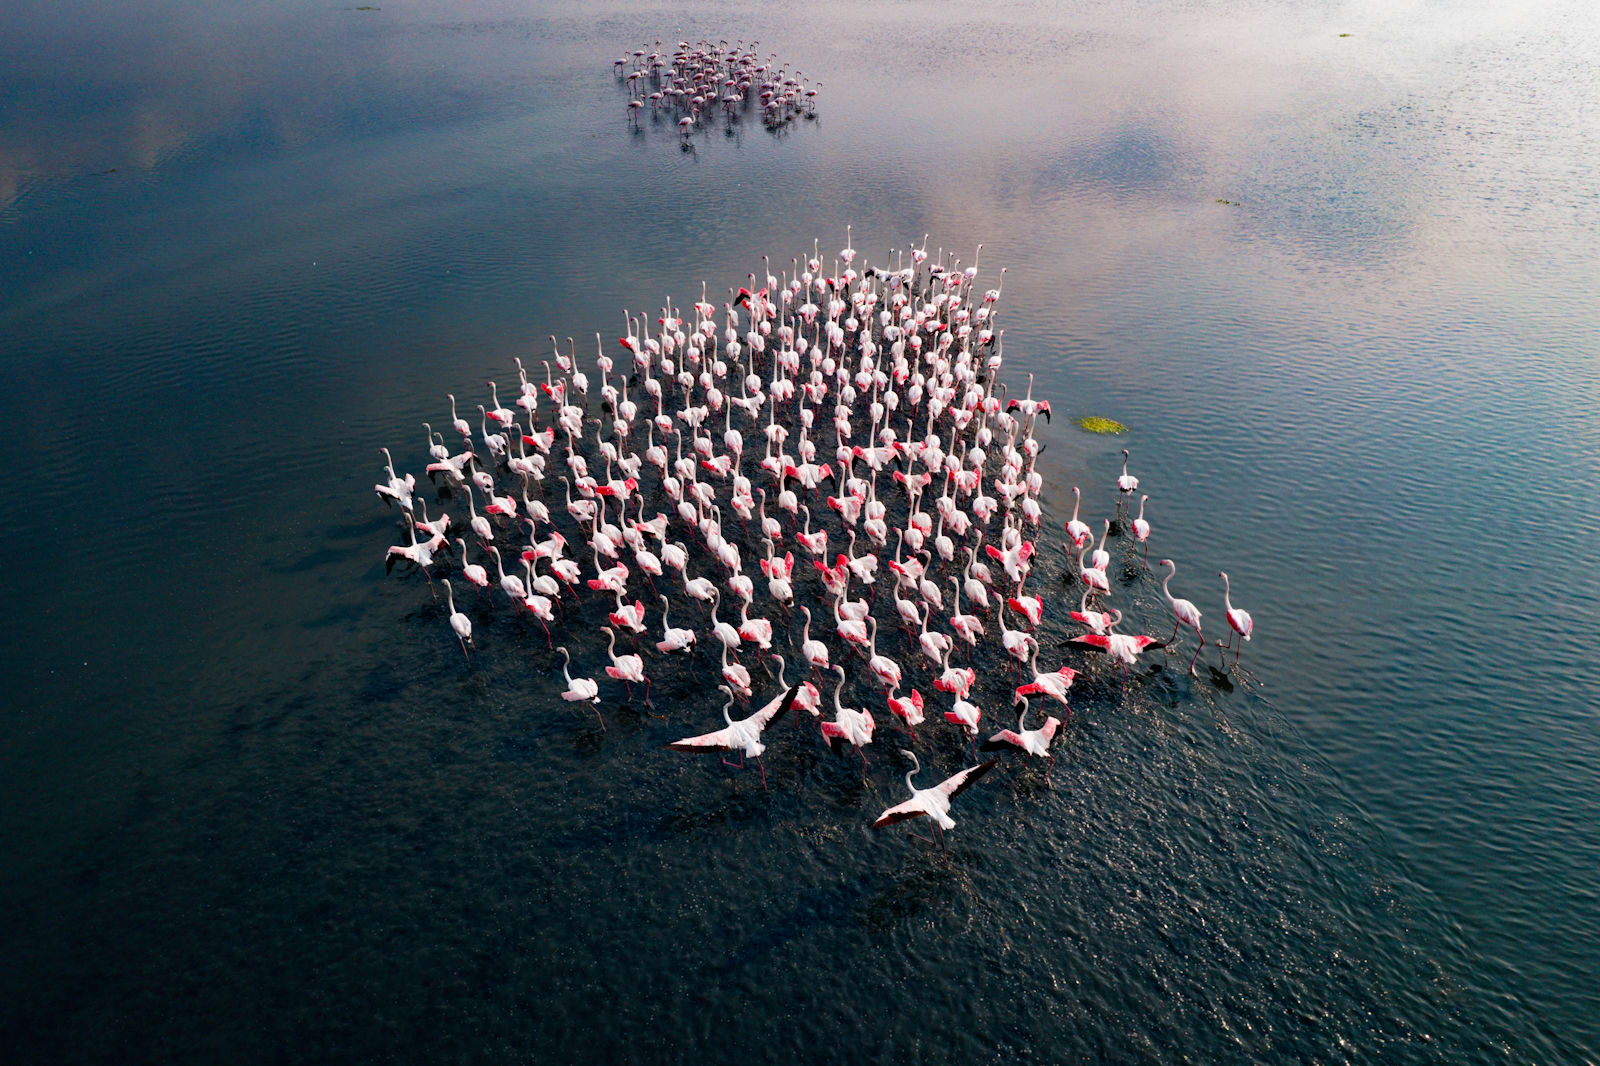 De fotograaf documenteert "roze leger" Opvallend in Indian Lake